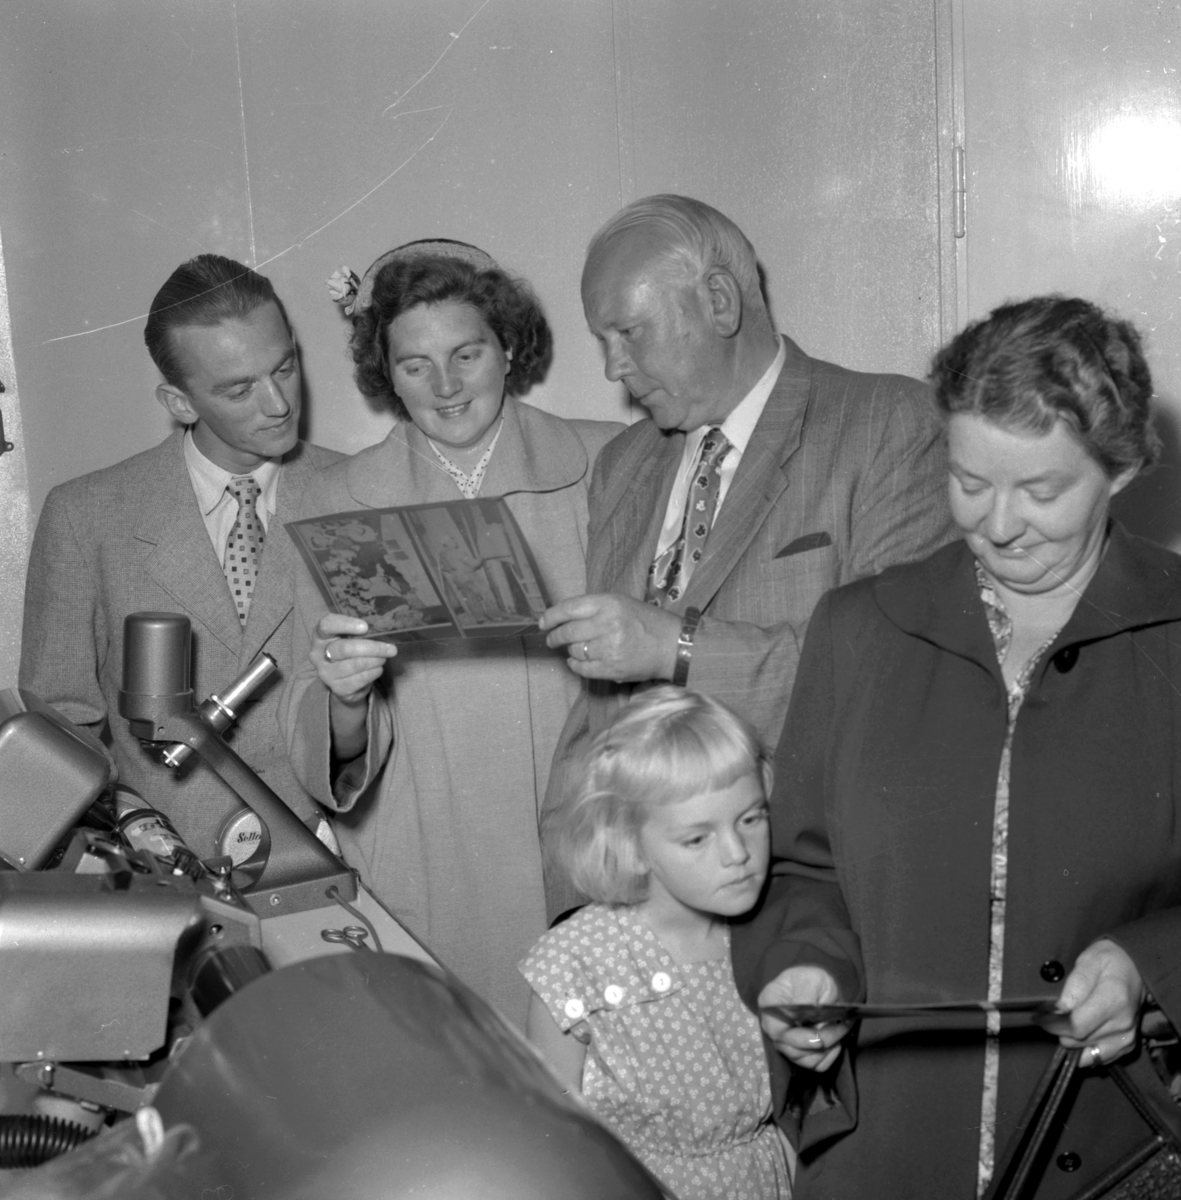 Rundvandring på Örebro Kuriren.
25 augusti 1955